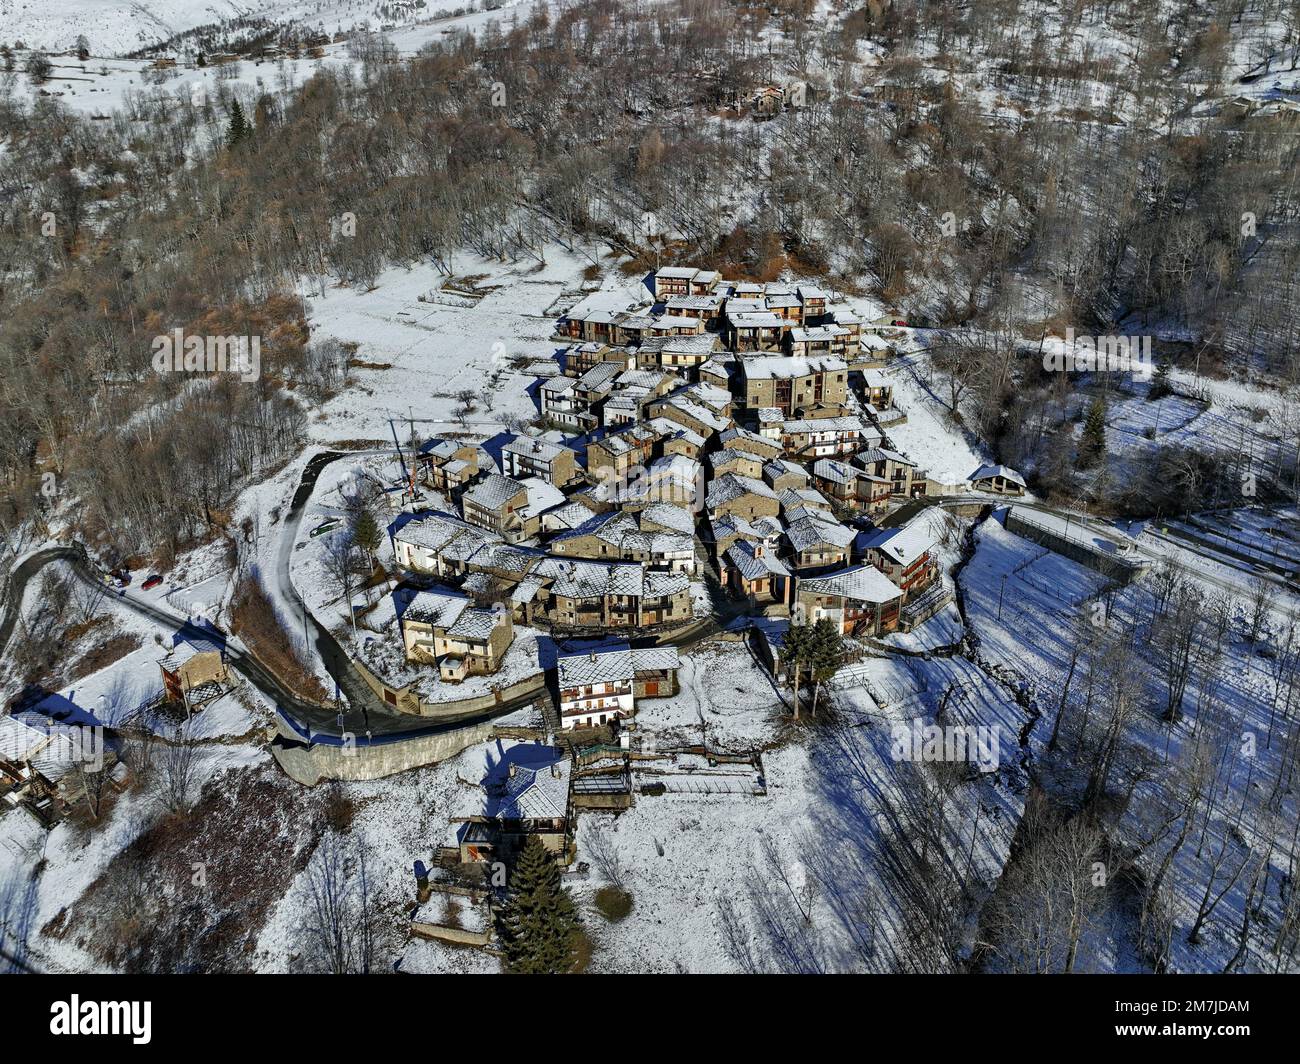 Vista de invierno desde arriba de Ostana, un pueblo occitano por debajo de Monviso. Se encuentra en el valle del Po y está incluido en la lista de los más bellos v Foto de stock